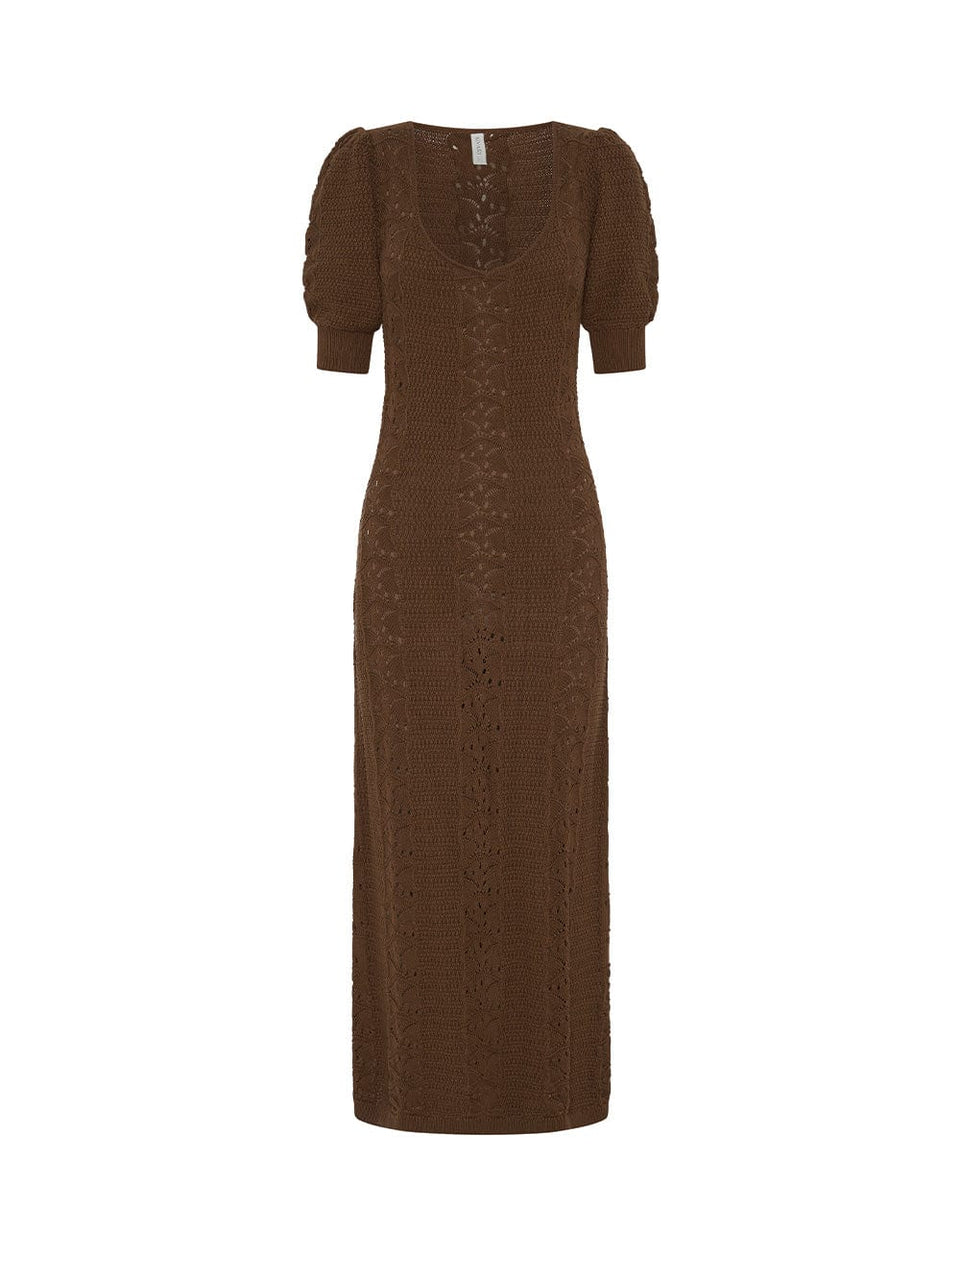 Helena Knit Dress Chocolate KIVARI | Brown knit dress